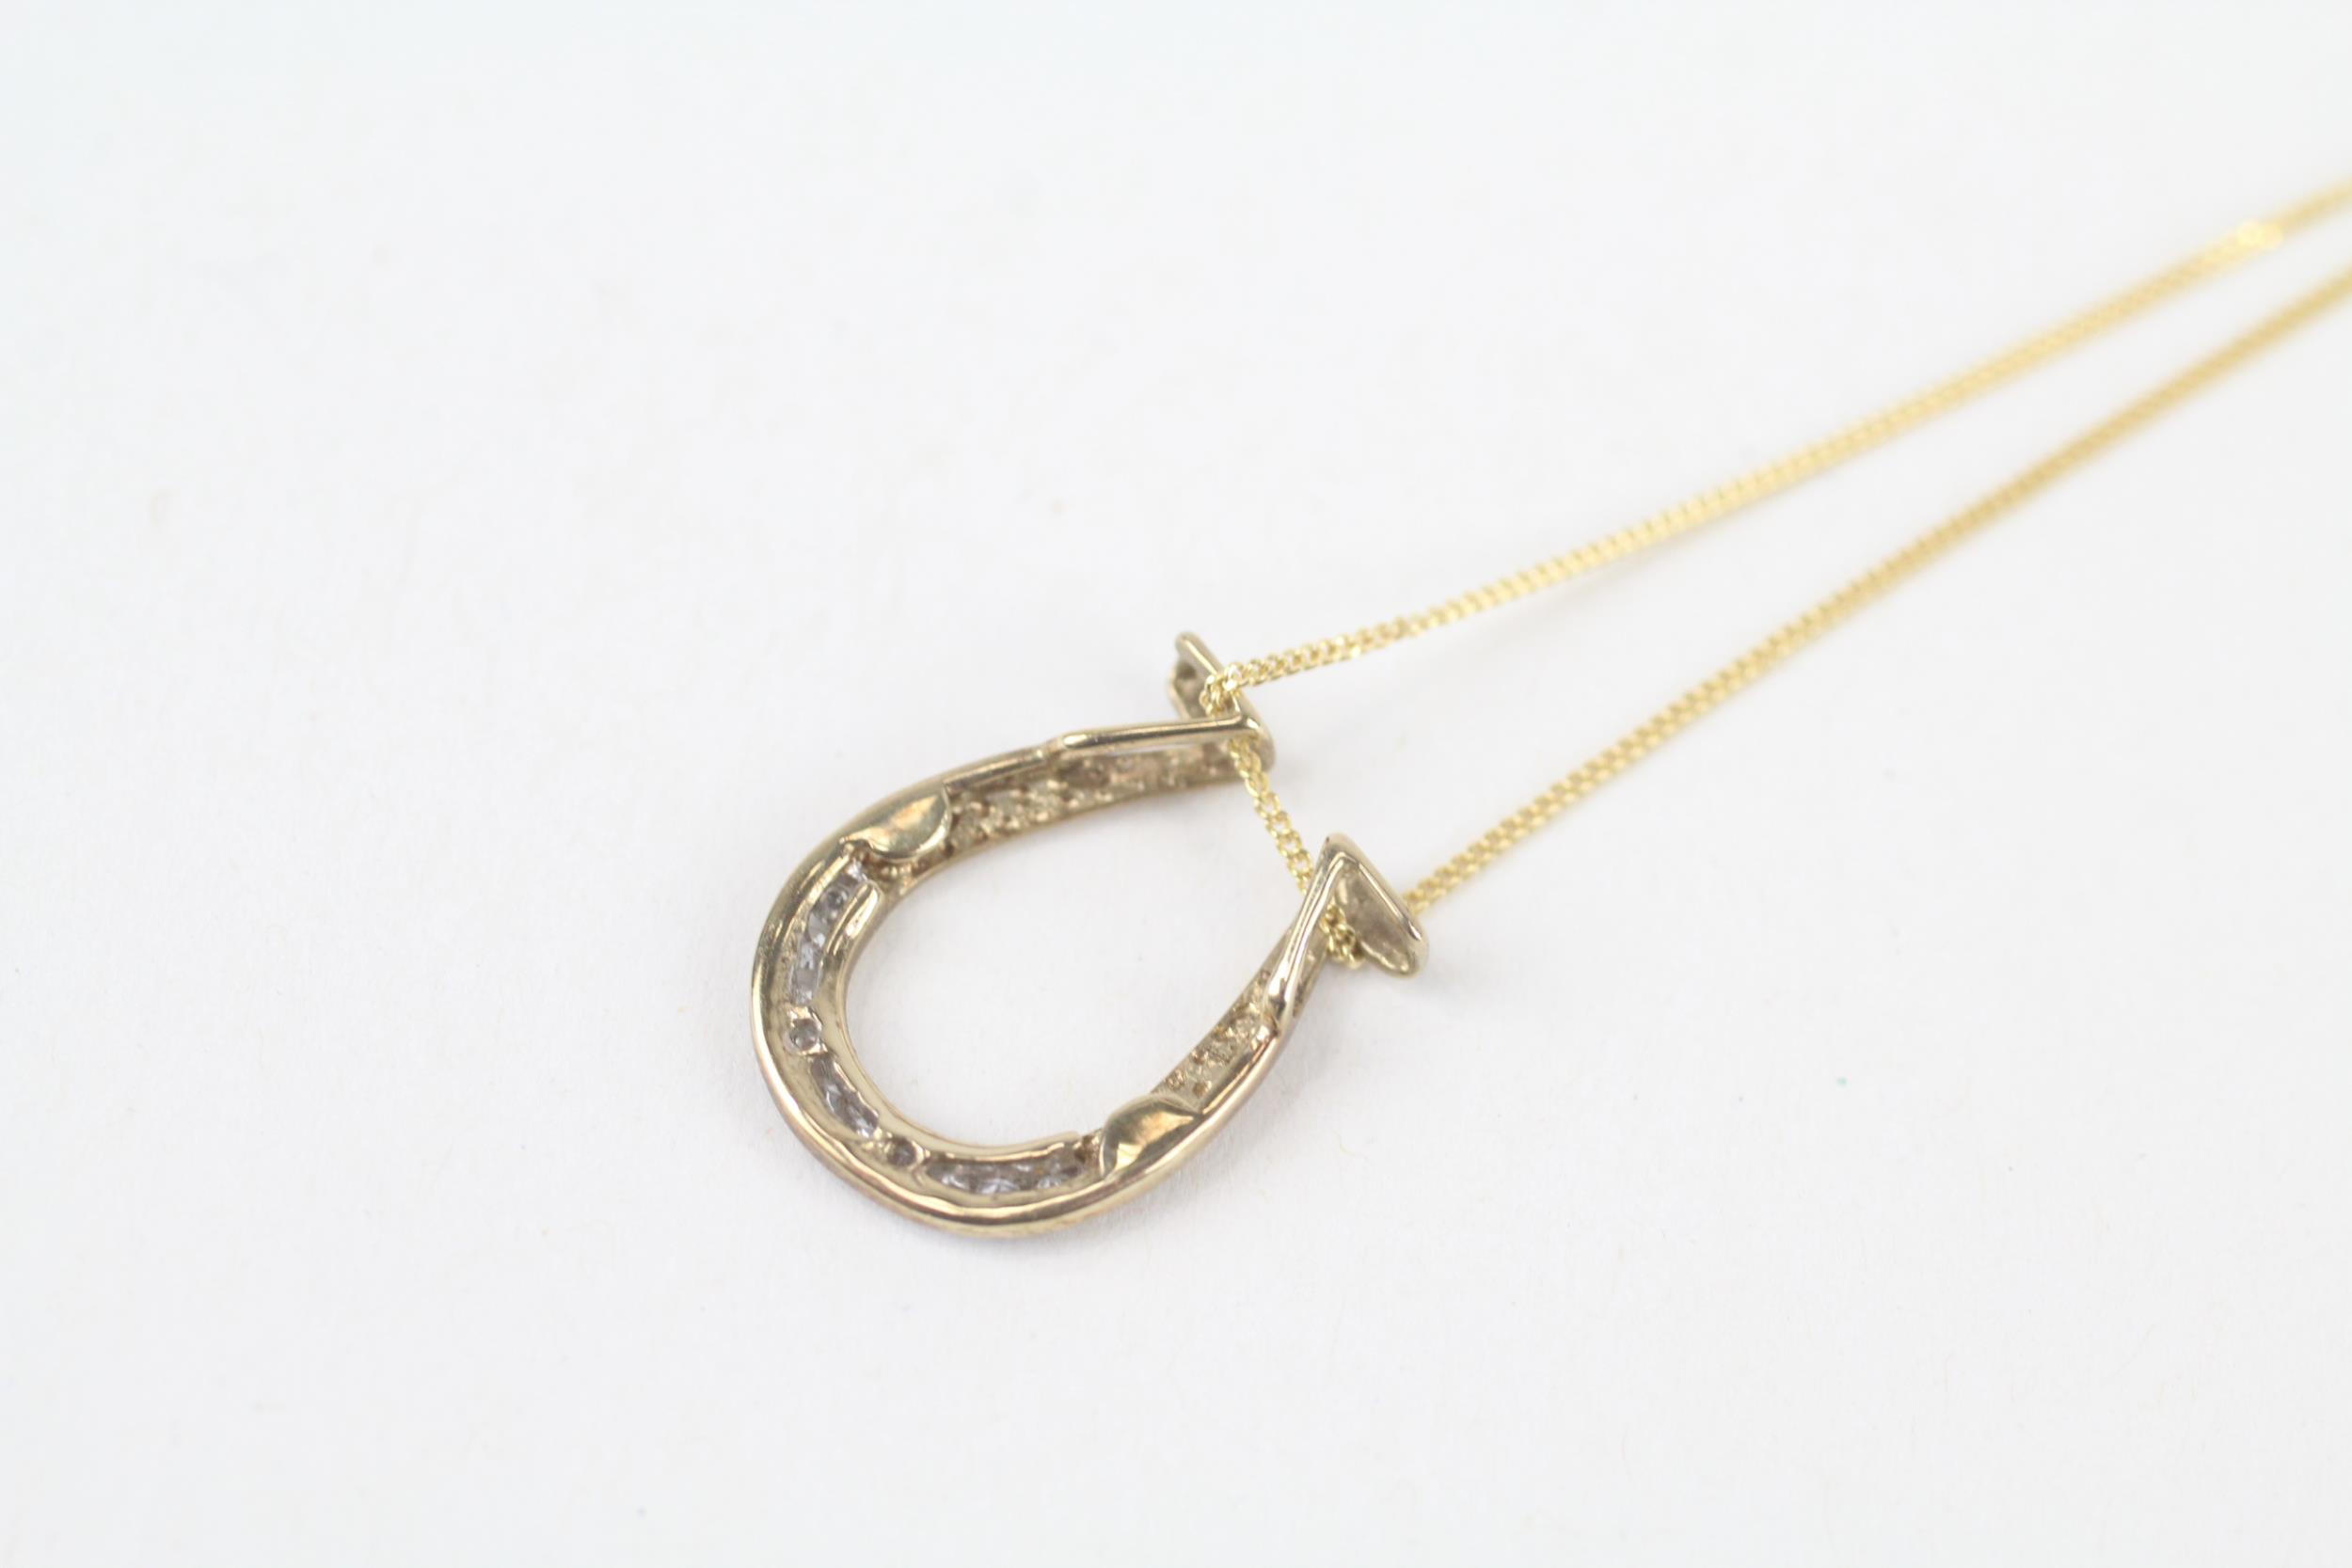 9ct gold diamond horseshoe pendant necklace 1.6 g - Image 4 of 4